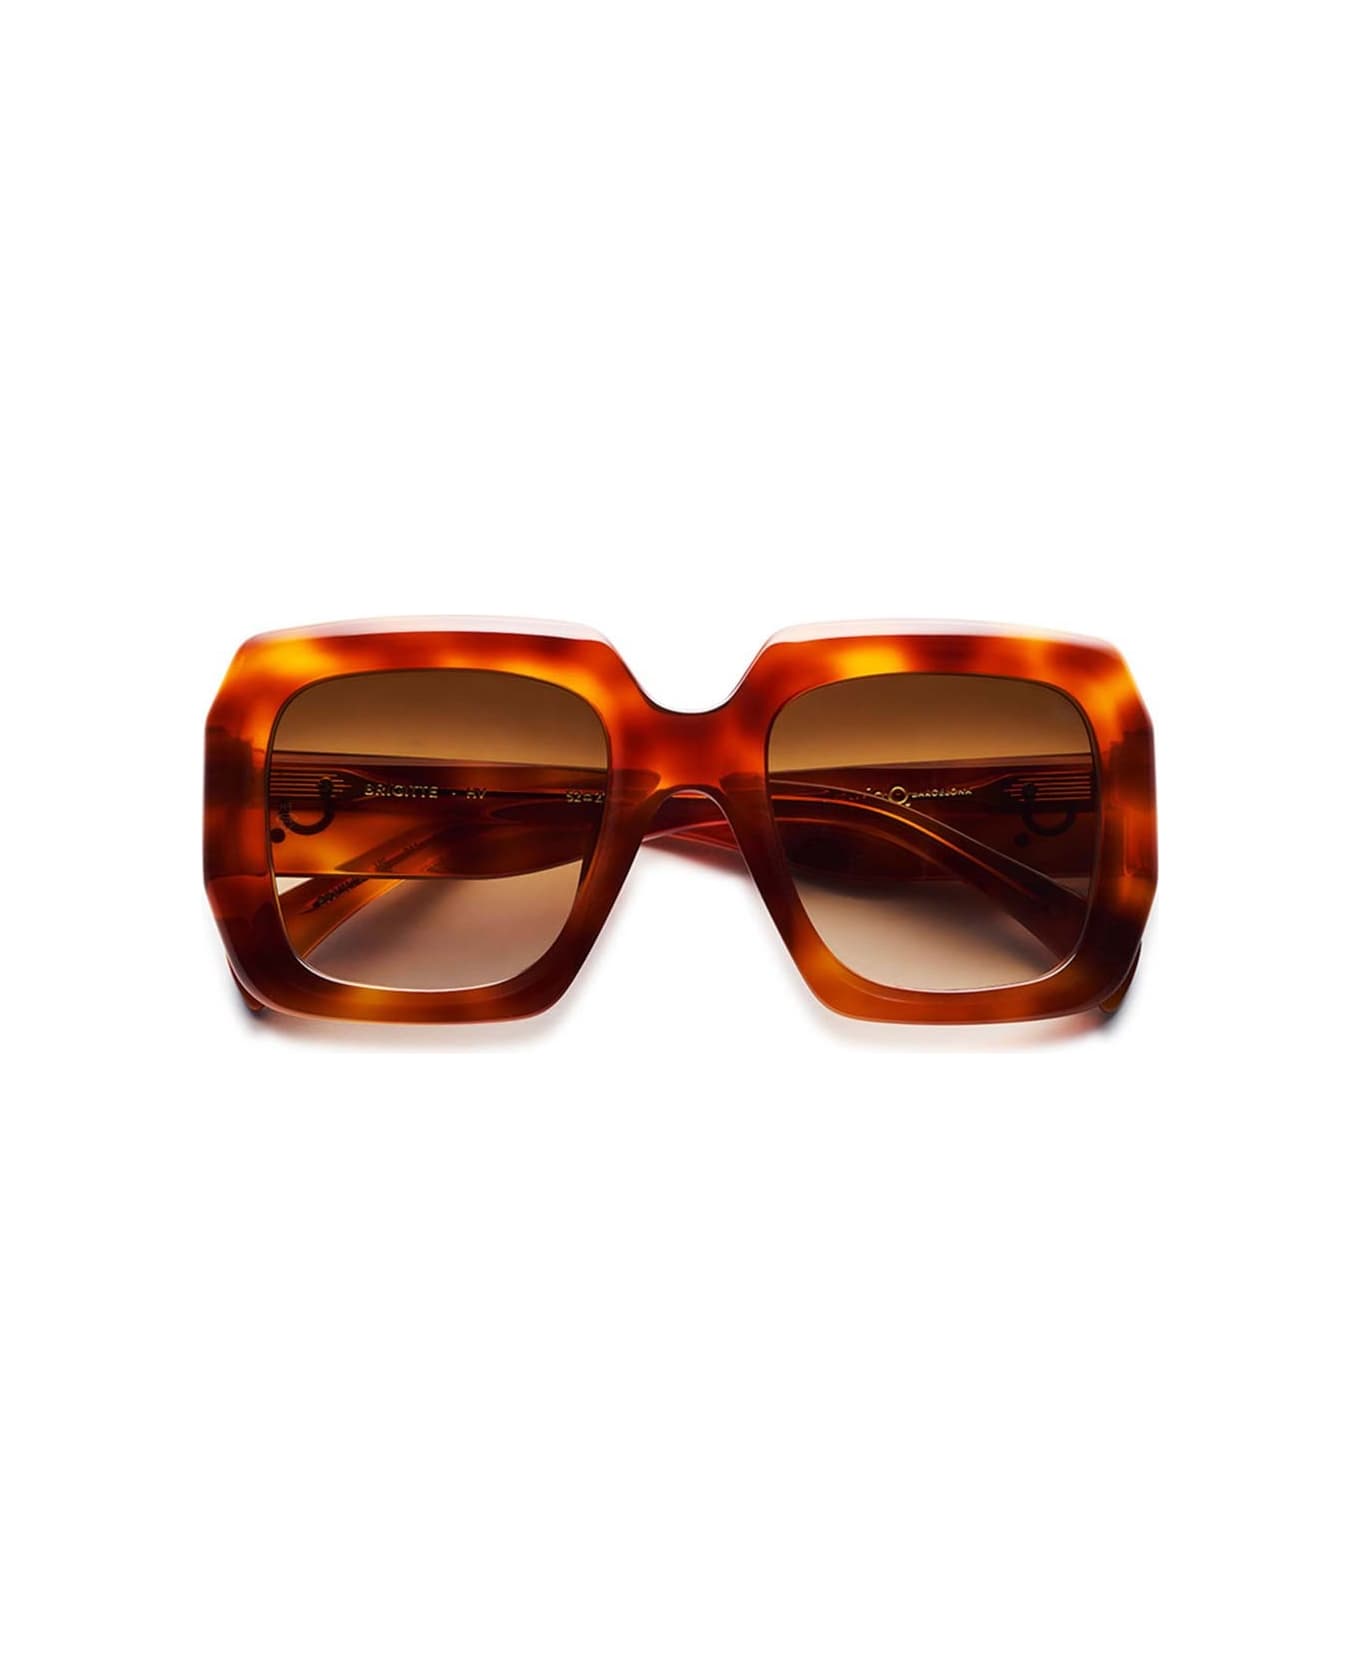 Etnia Barcelona Sunglasses - Marrone/Marrone